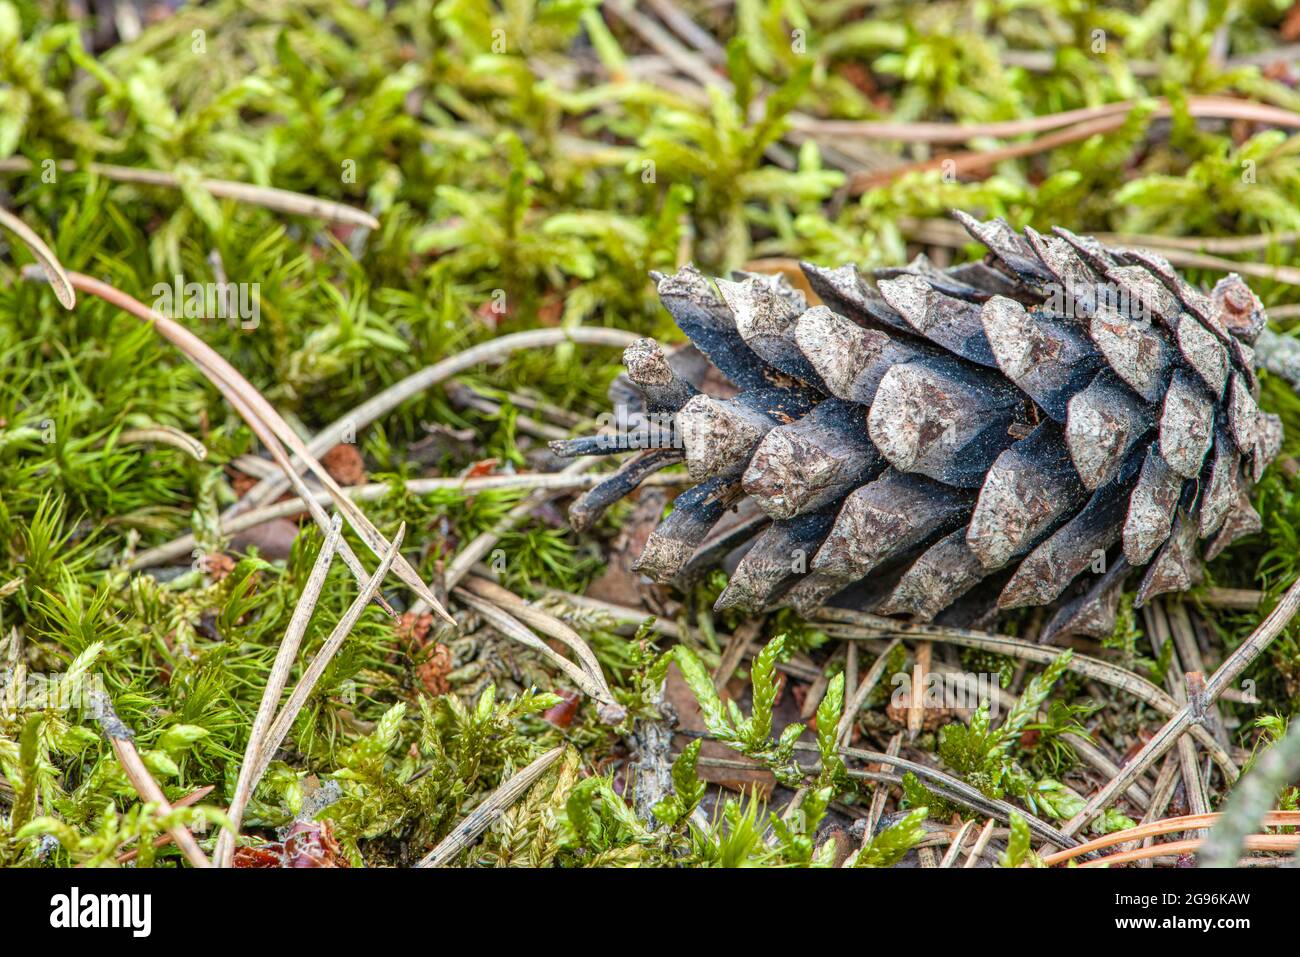 Ein Kiefernkegel im Wald, ein trockener Kegel liegt auf dem Boden vor einem Hintergrund aus Moos und Kiefernnadeln Stockfoto